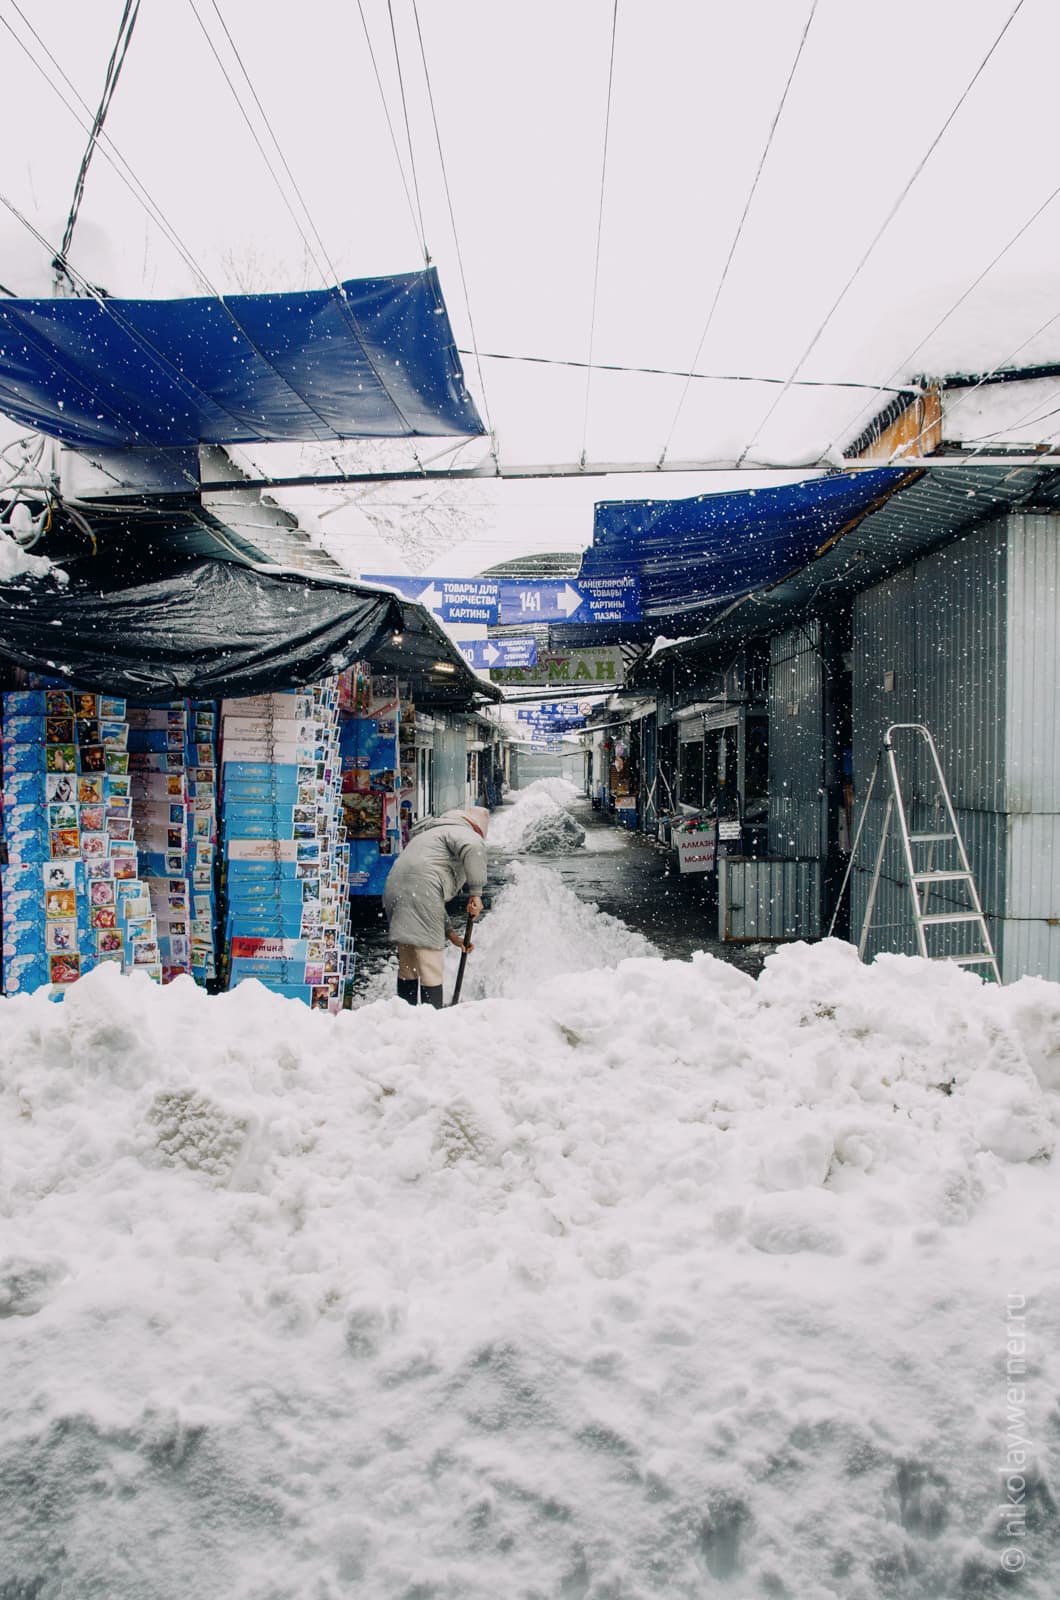 Большая стена снега, за ней длинный ряд ларьков и женщина чистит снег возле своего торгового места